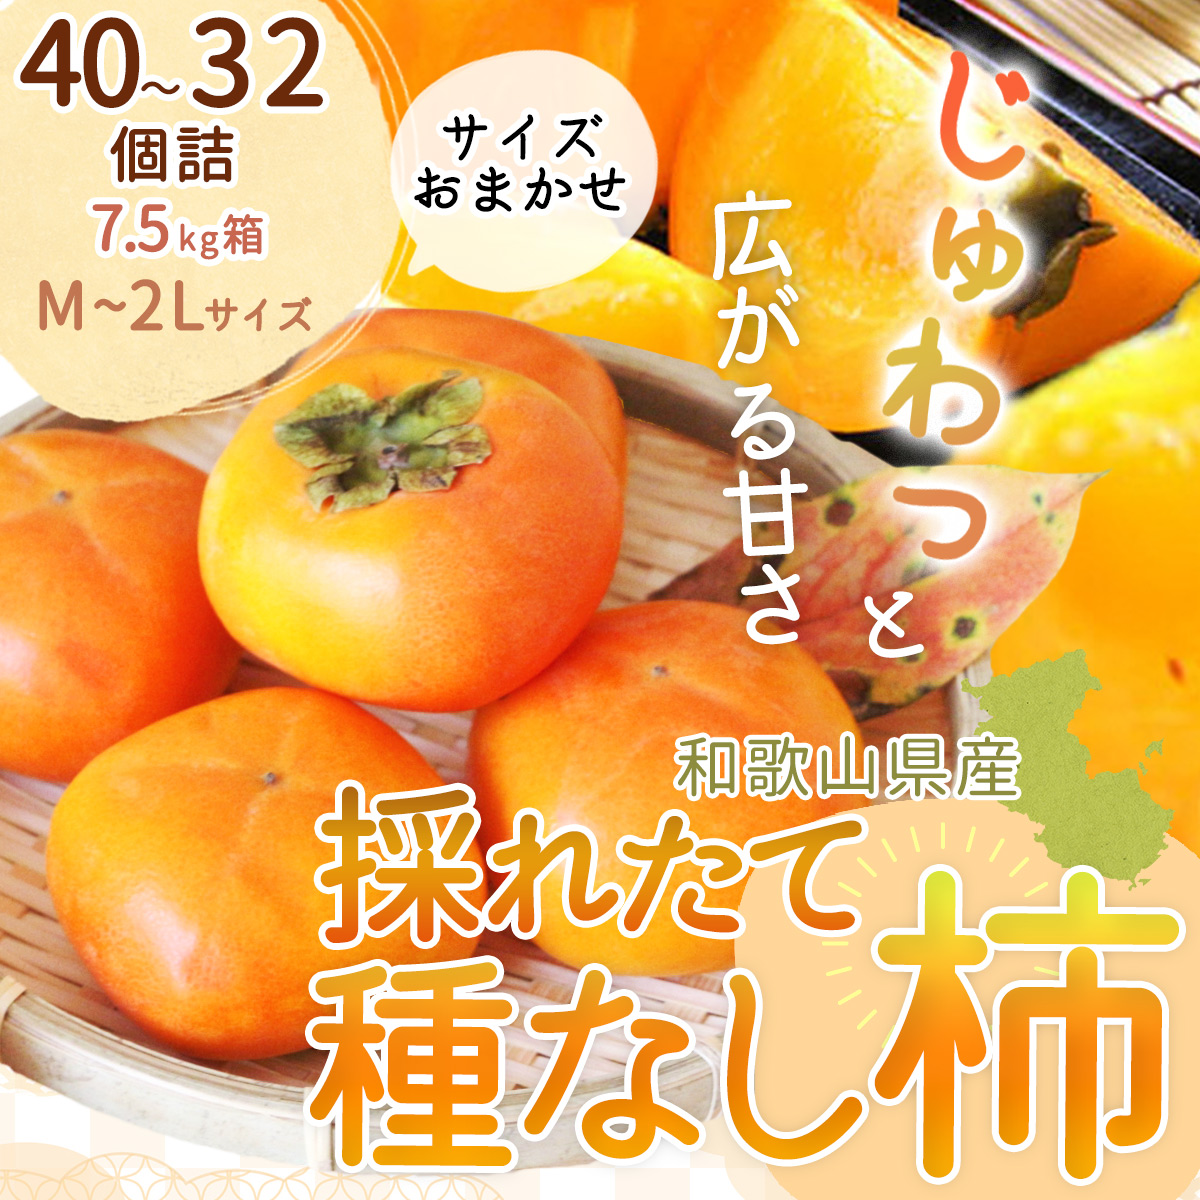 訳あり たねなし柿  約10kg  和歌山県産 柿